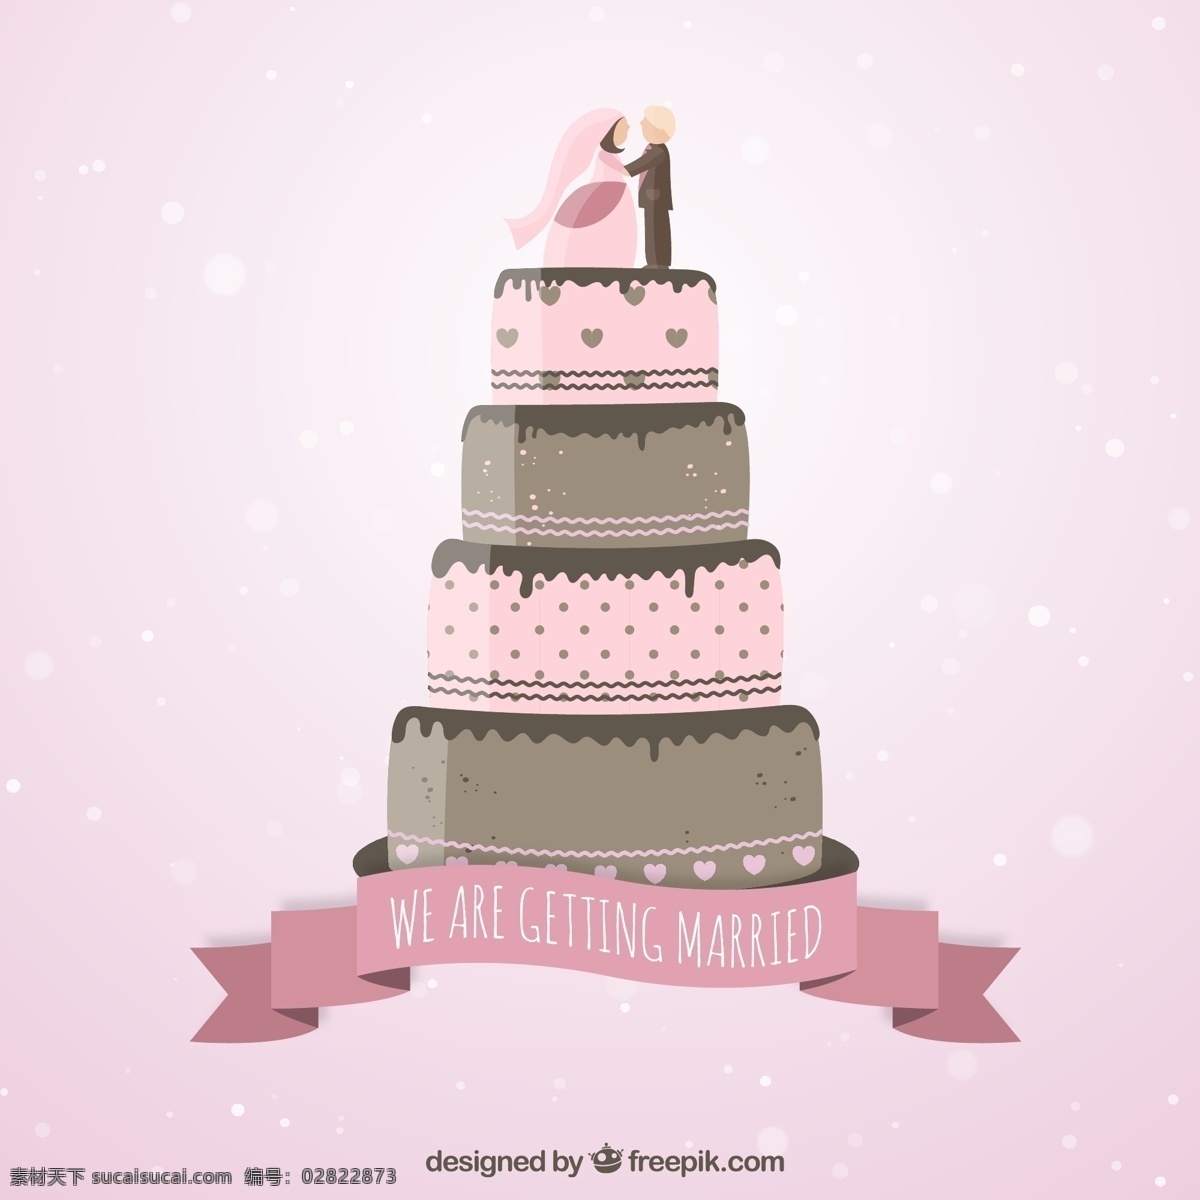 粉色婚礼请柬 婚礼 蛋糕 粉红色 庆典 新娘 装饰 甜品 浪漫 庆祝 订婚 结婚 新郎 仪式